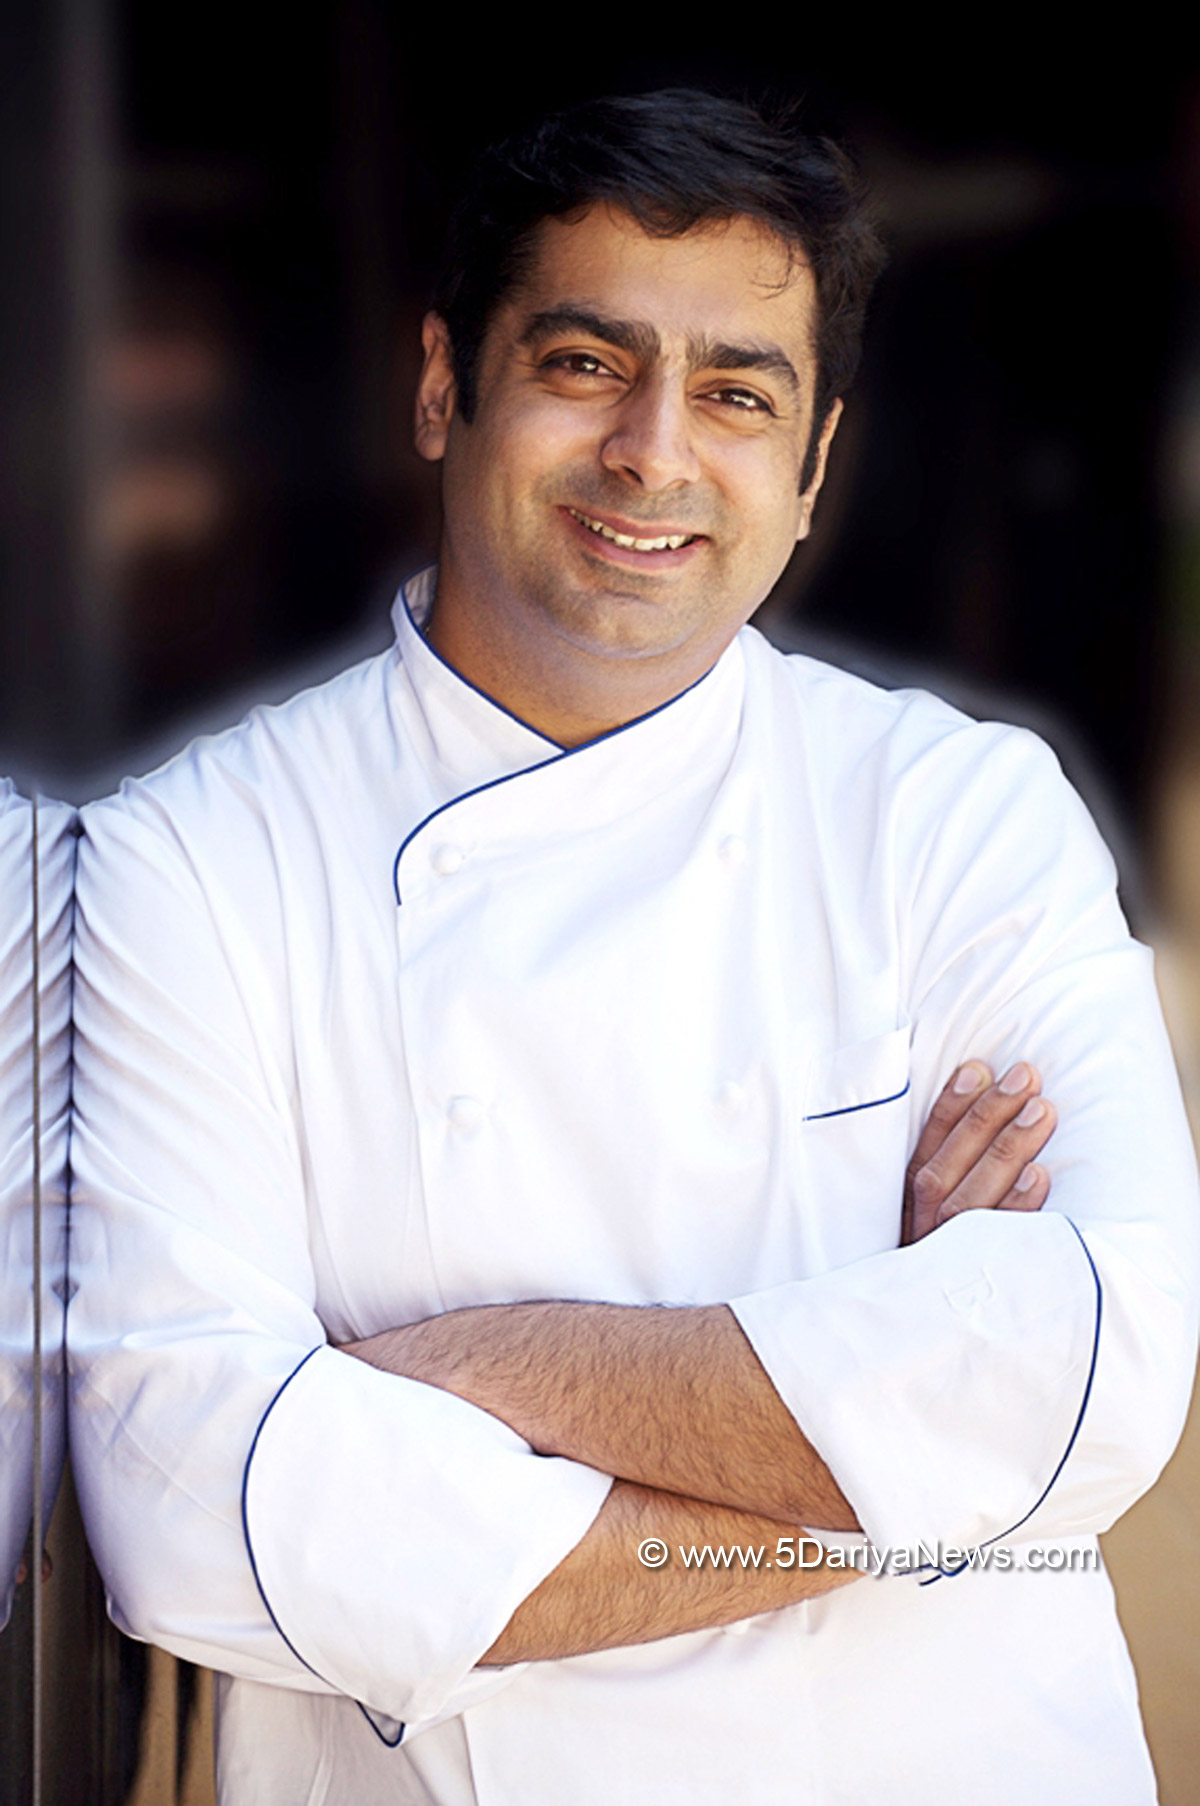 Chef Gautam Chaudhary